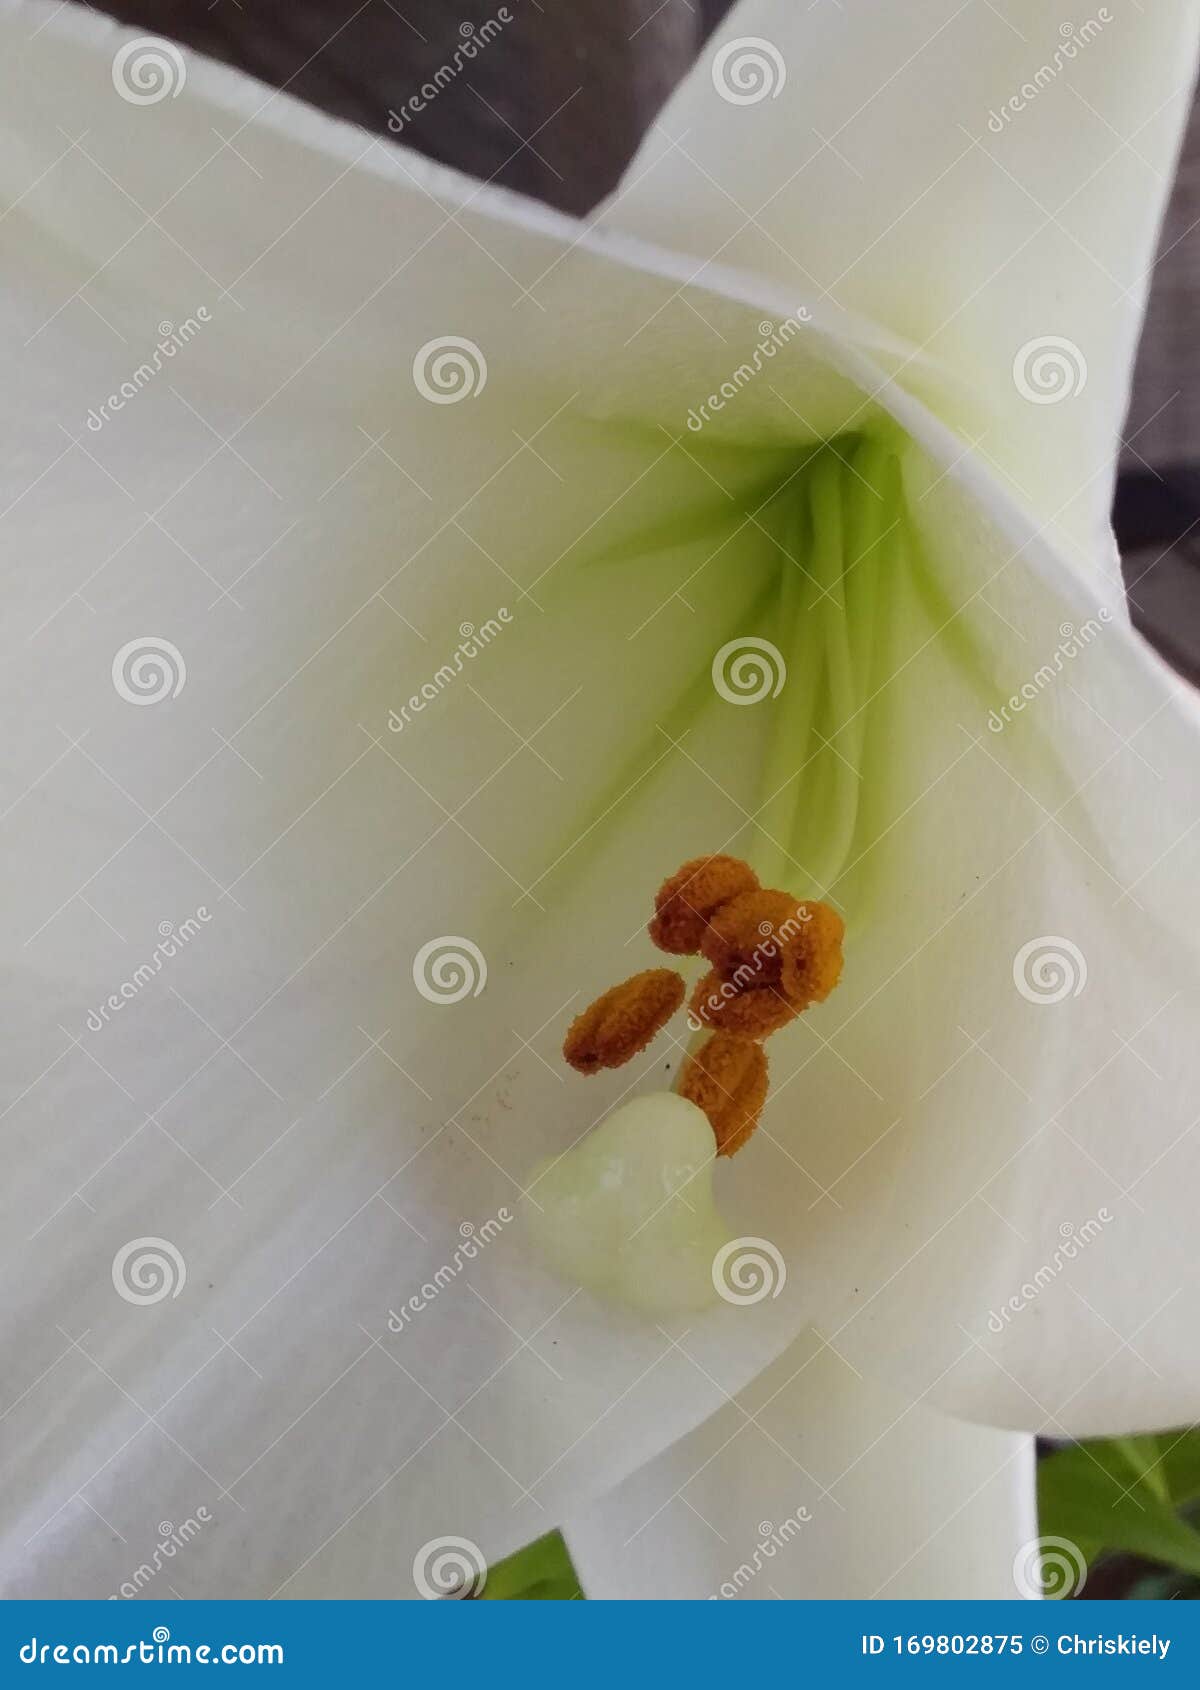 Flor de trompeta blanca imagen de archivo. Imagen de helecho - 169802875